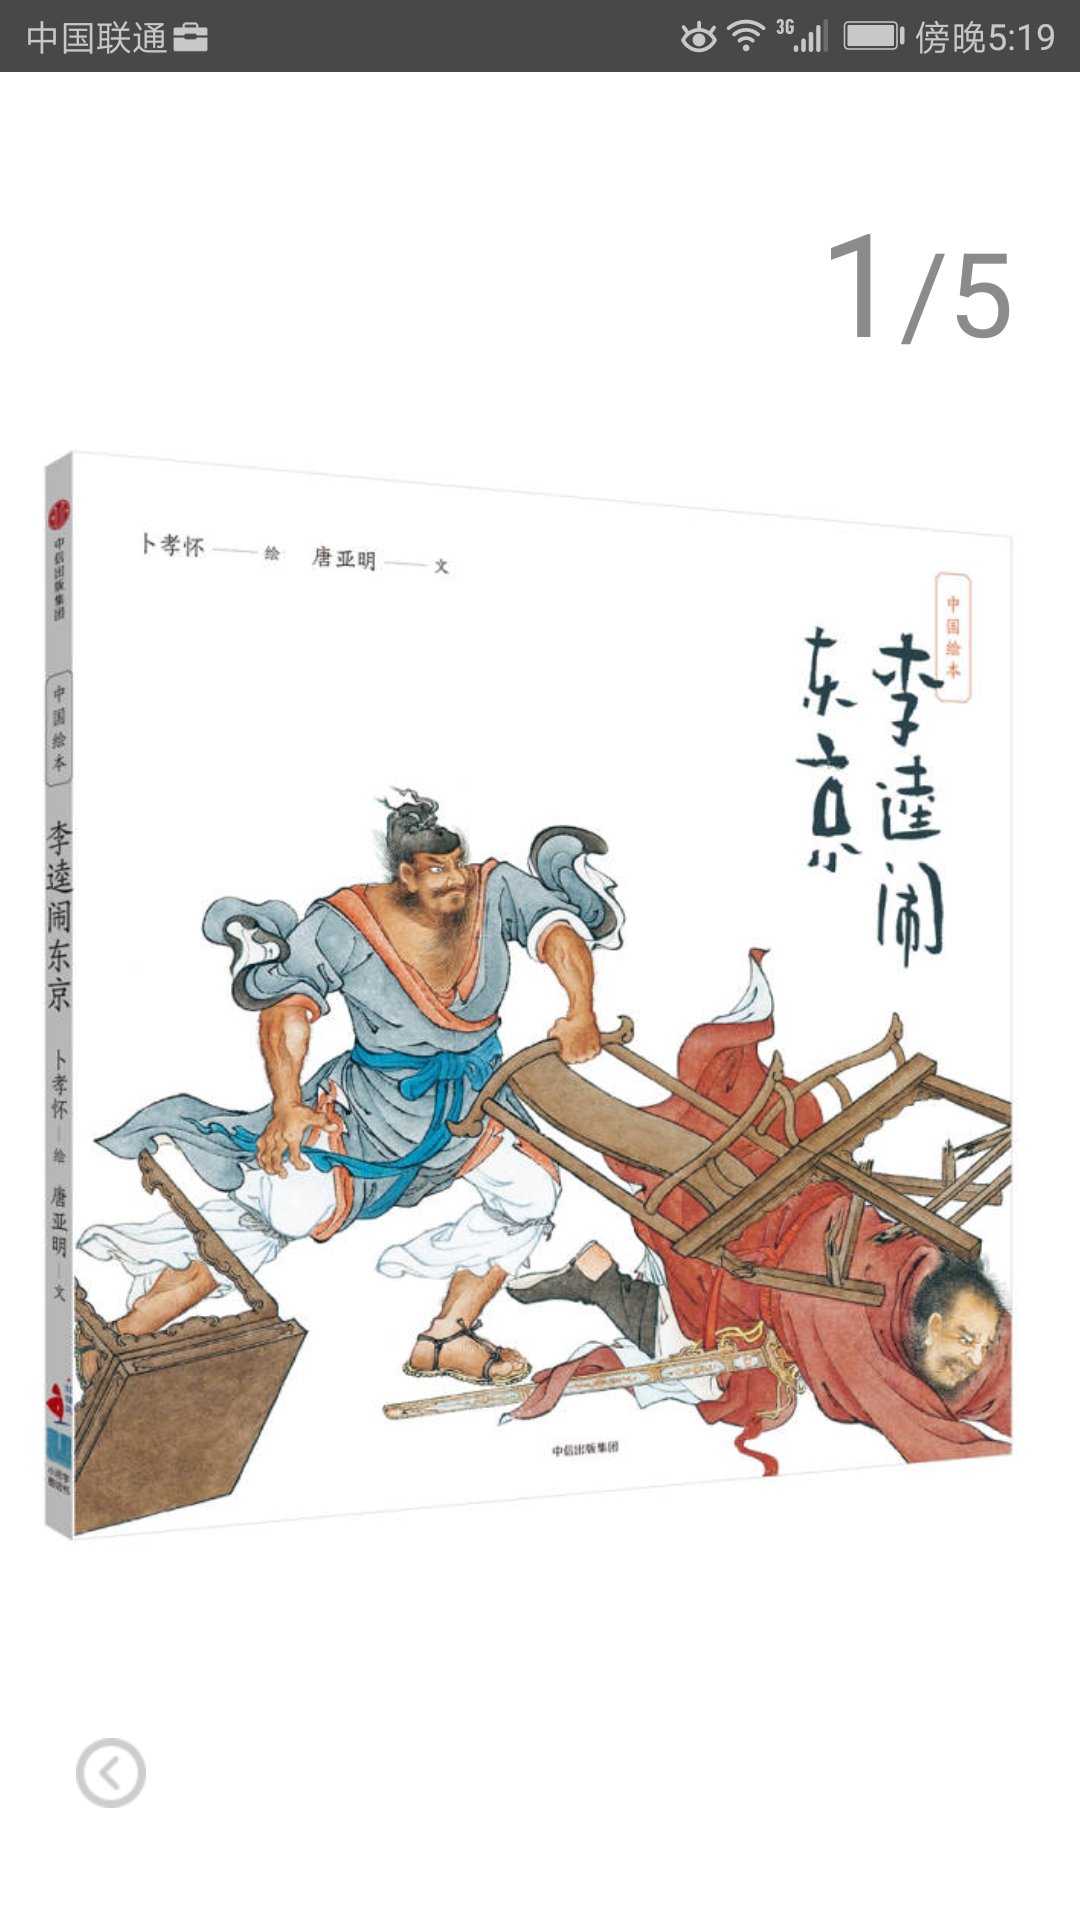 中信出版社推出的中国绘本系列，绘图生动可读性强，是给孩子普及传统文化的好读物。